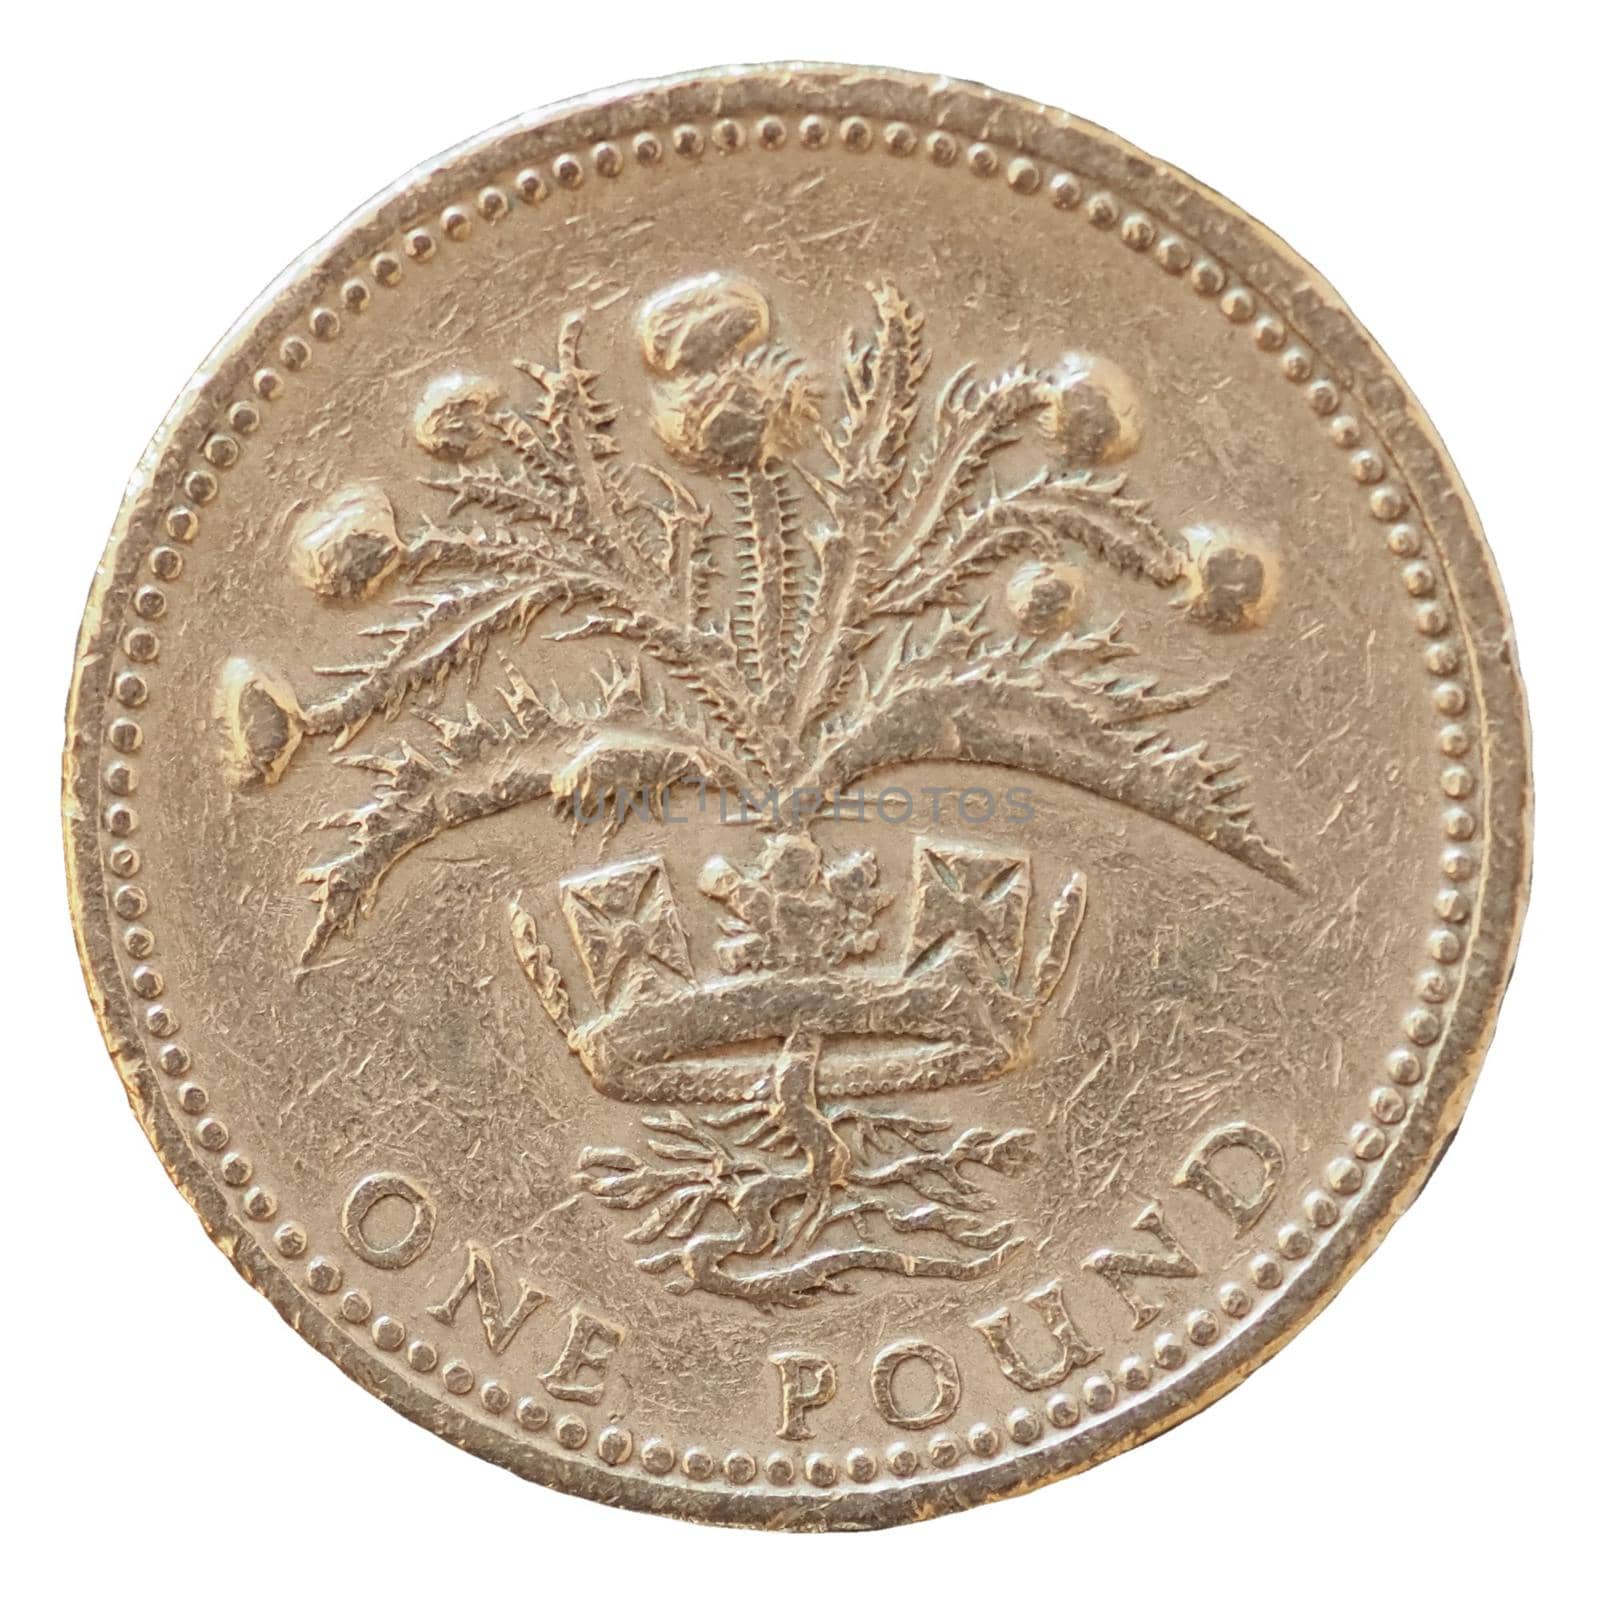 1 pound coin, United Kingdom by claudiodivizia